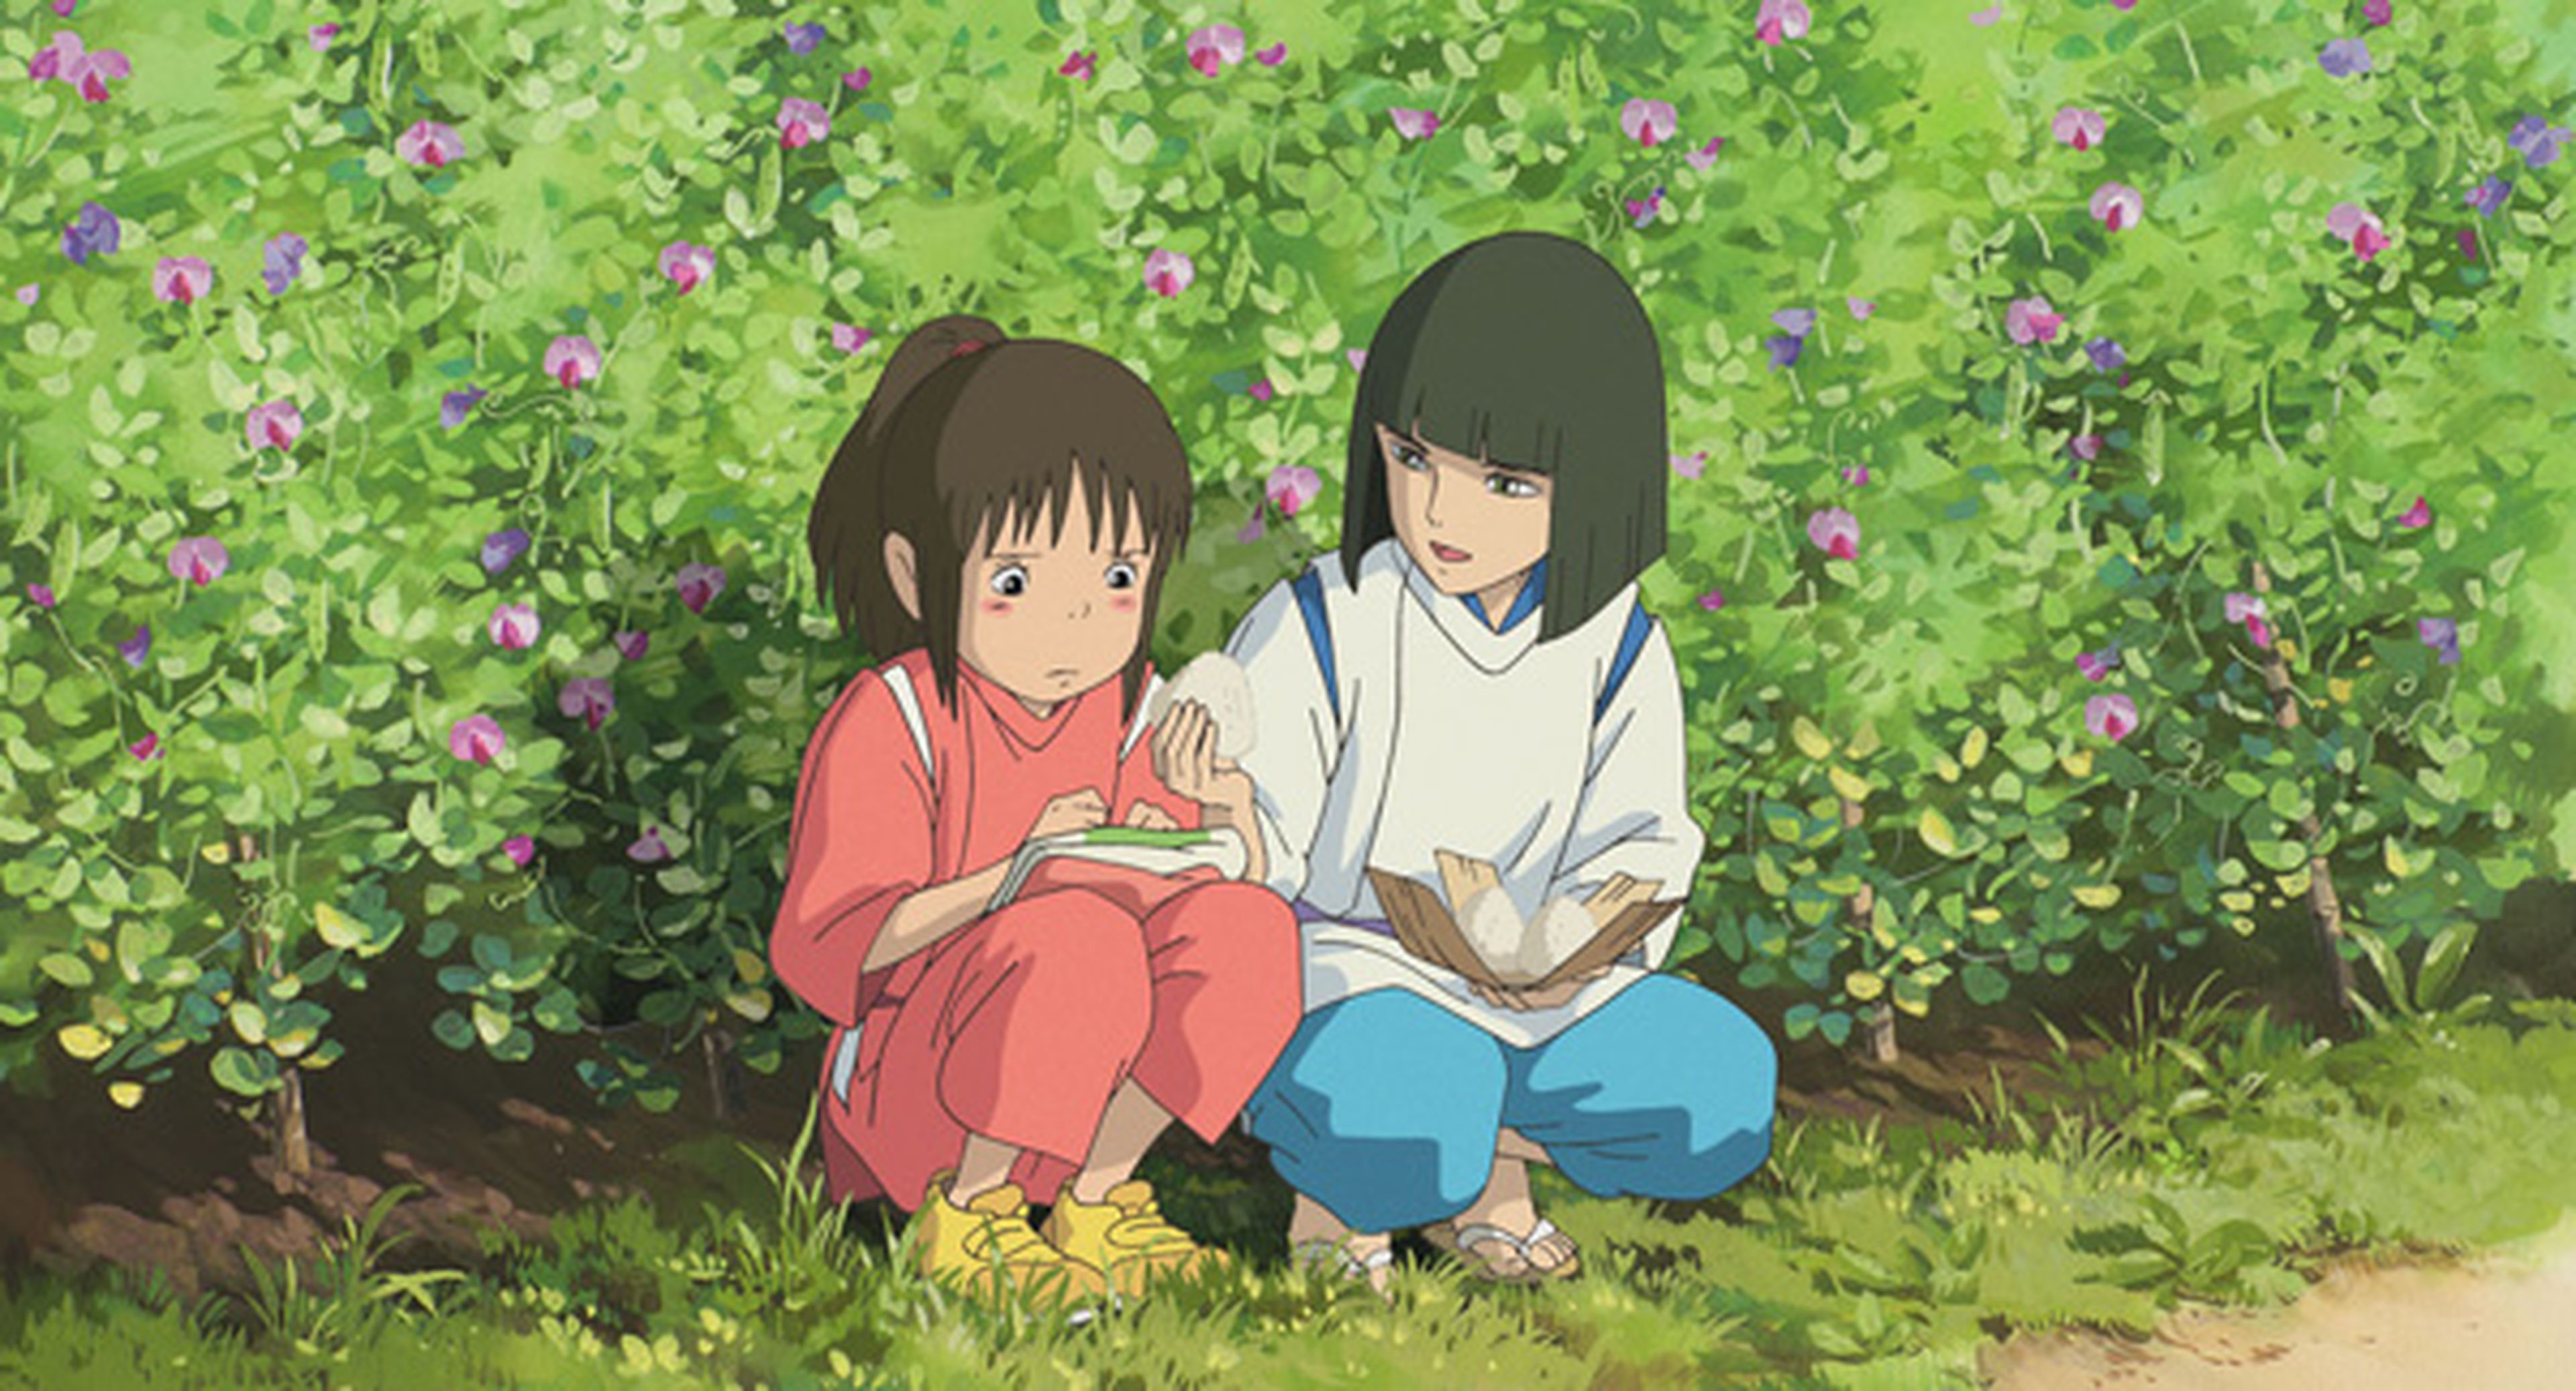 El Viaje de Chihiro - Crítica de la película de Hayao Miyazaki